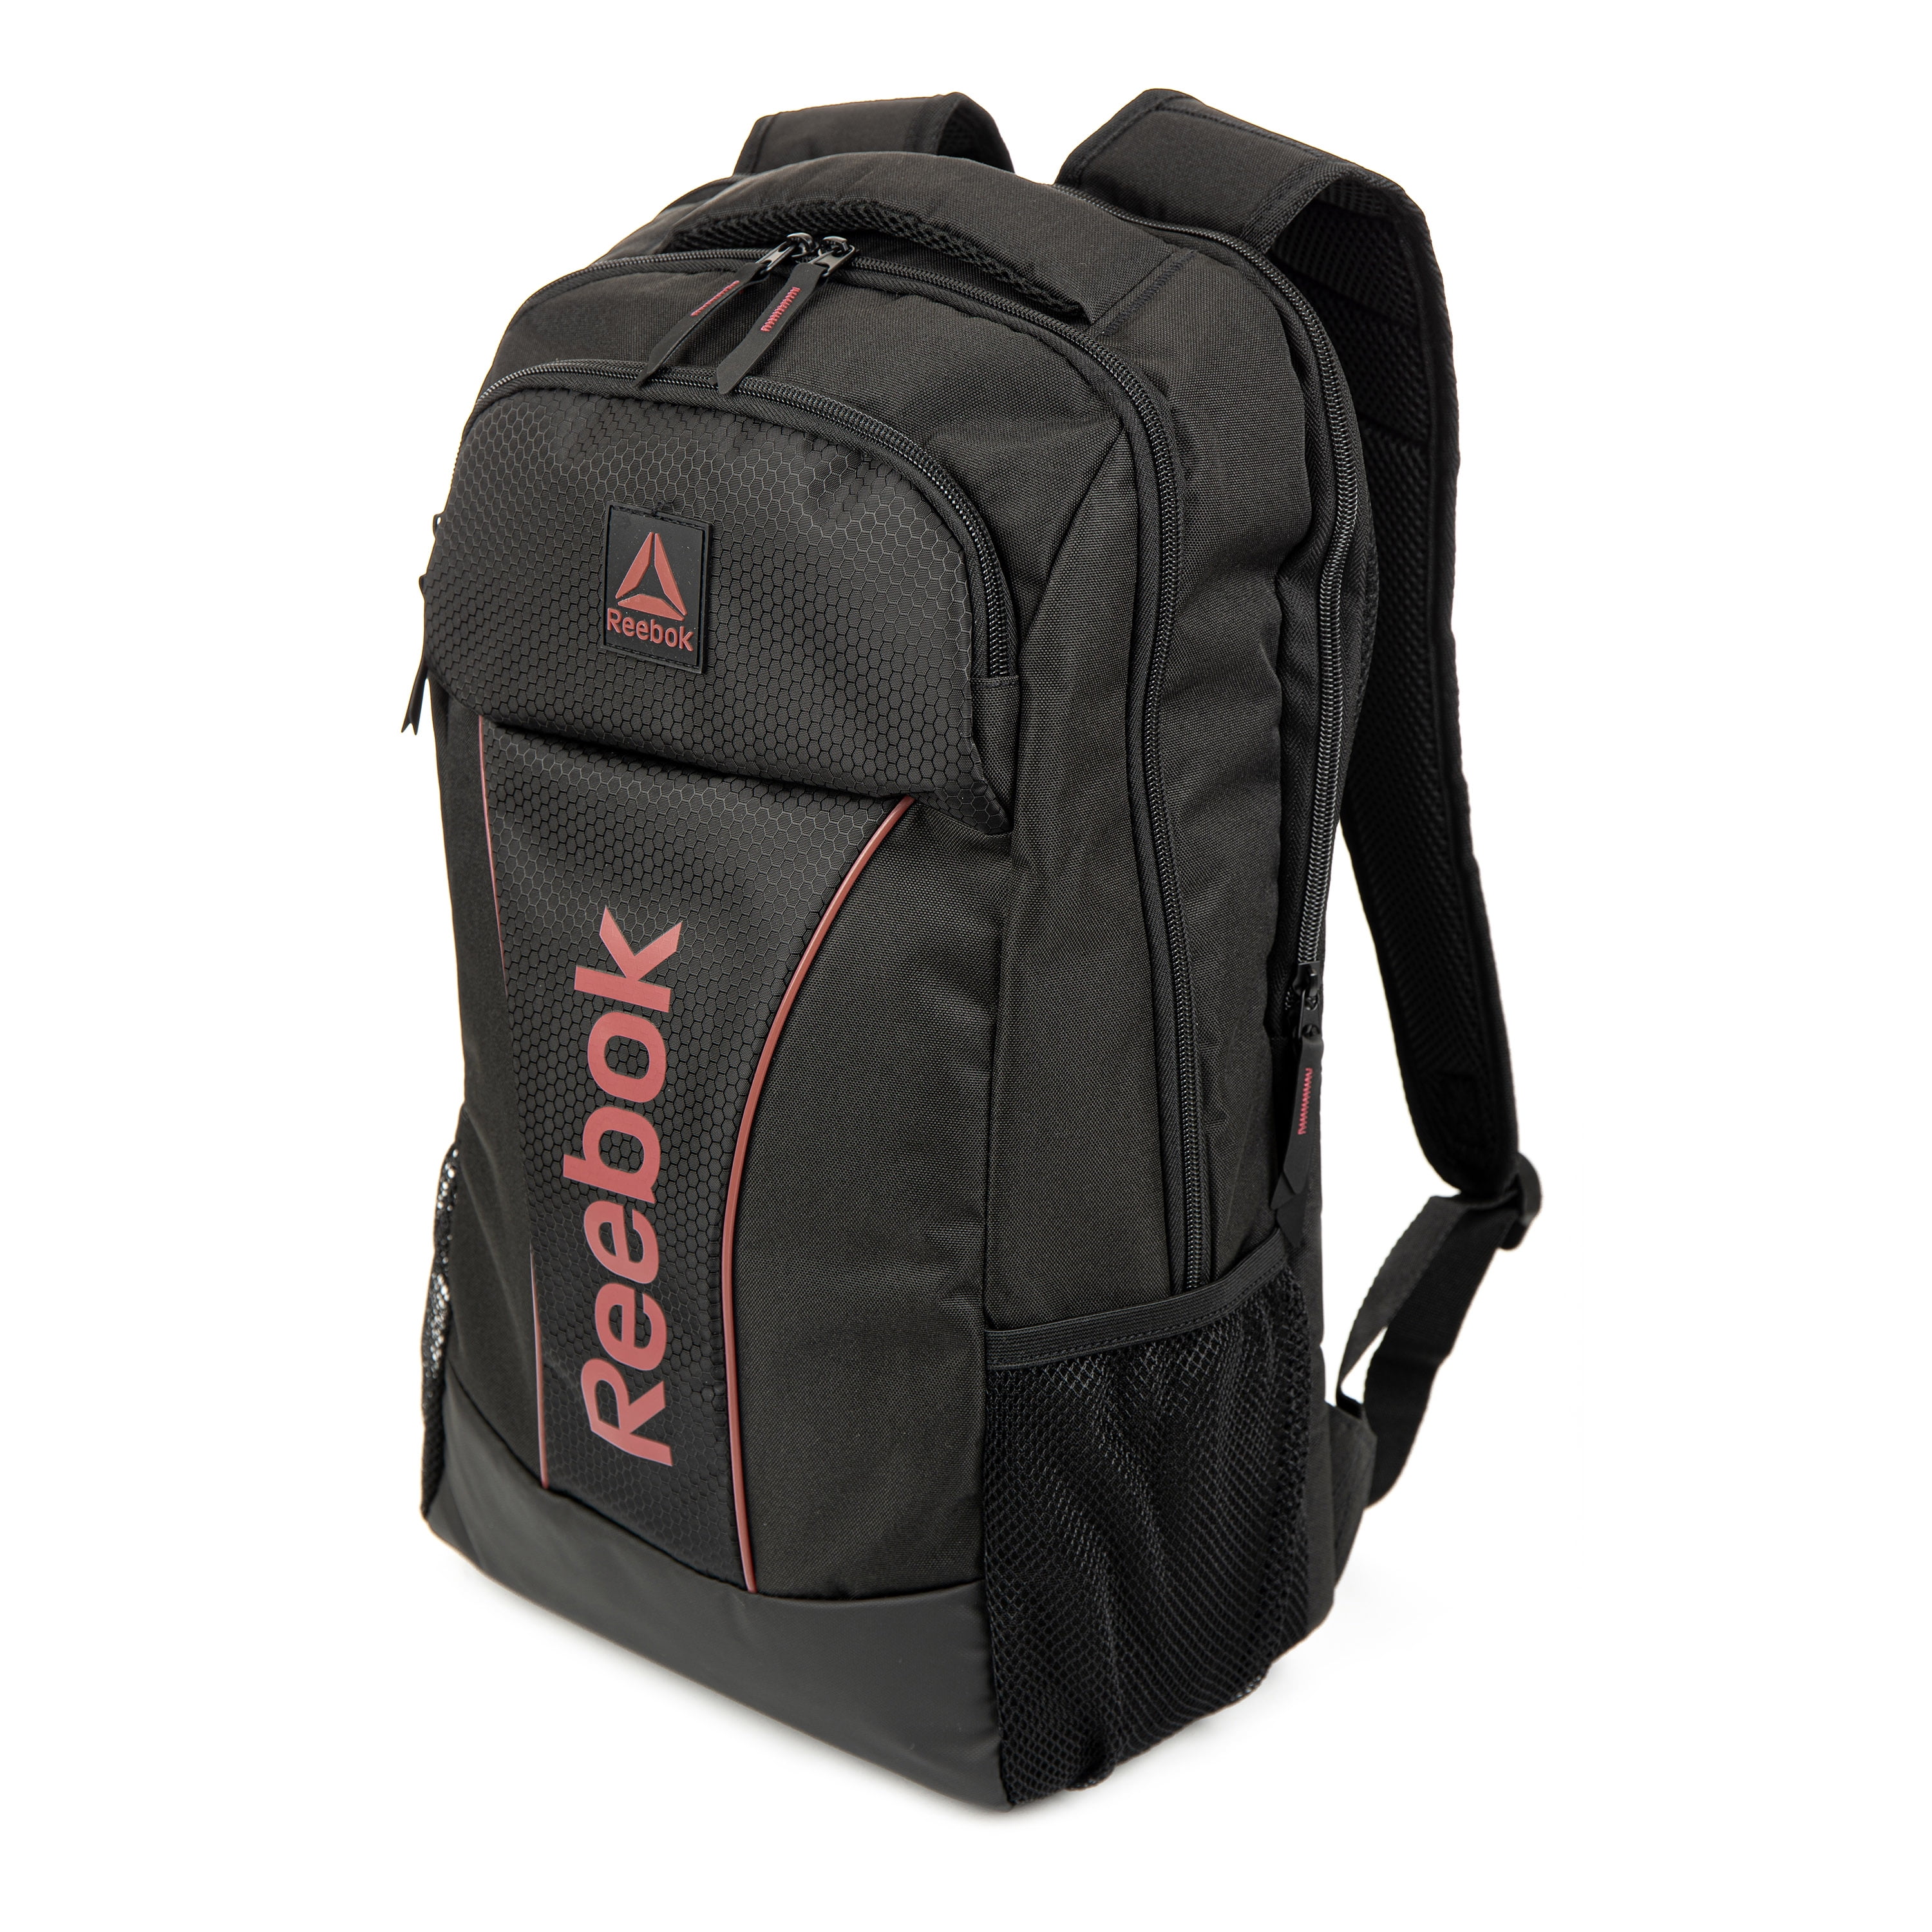 Reebok - Reebok Echo Backpack, Black - Walmart.com - Walmart.com